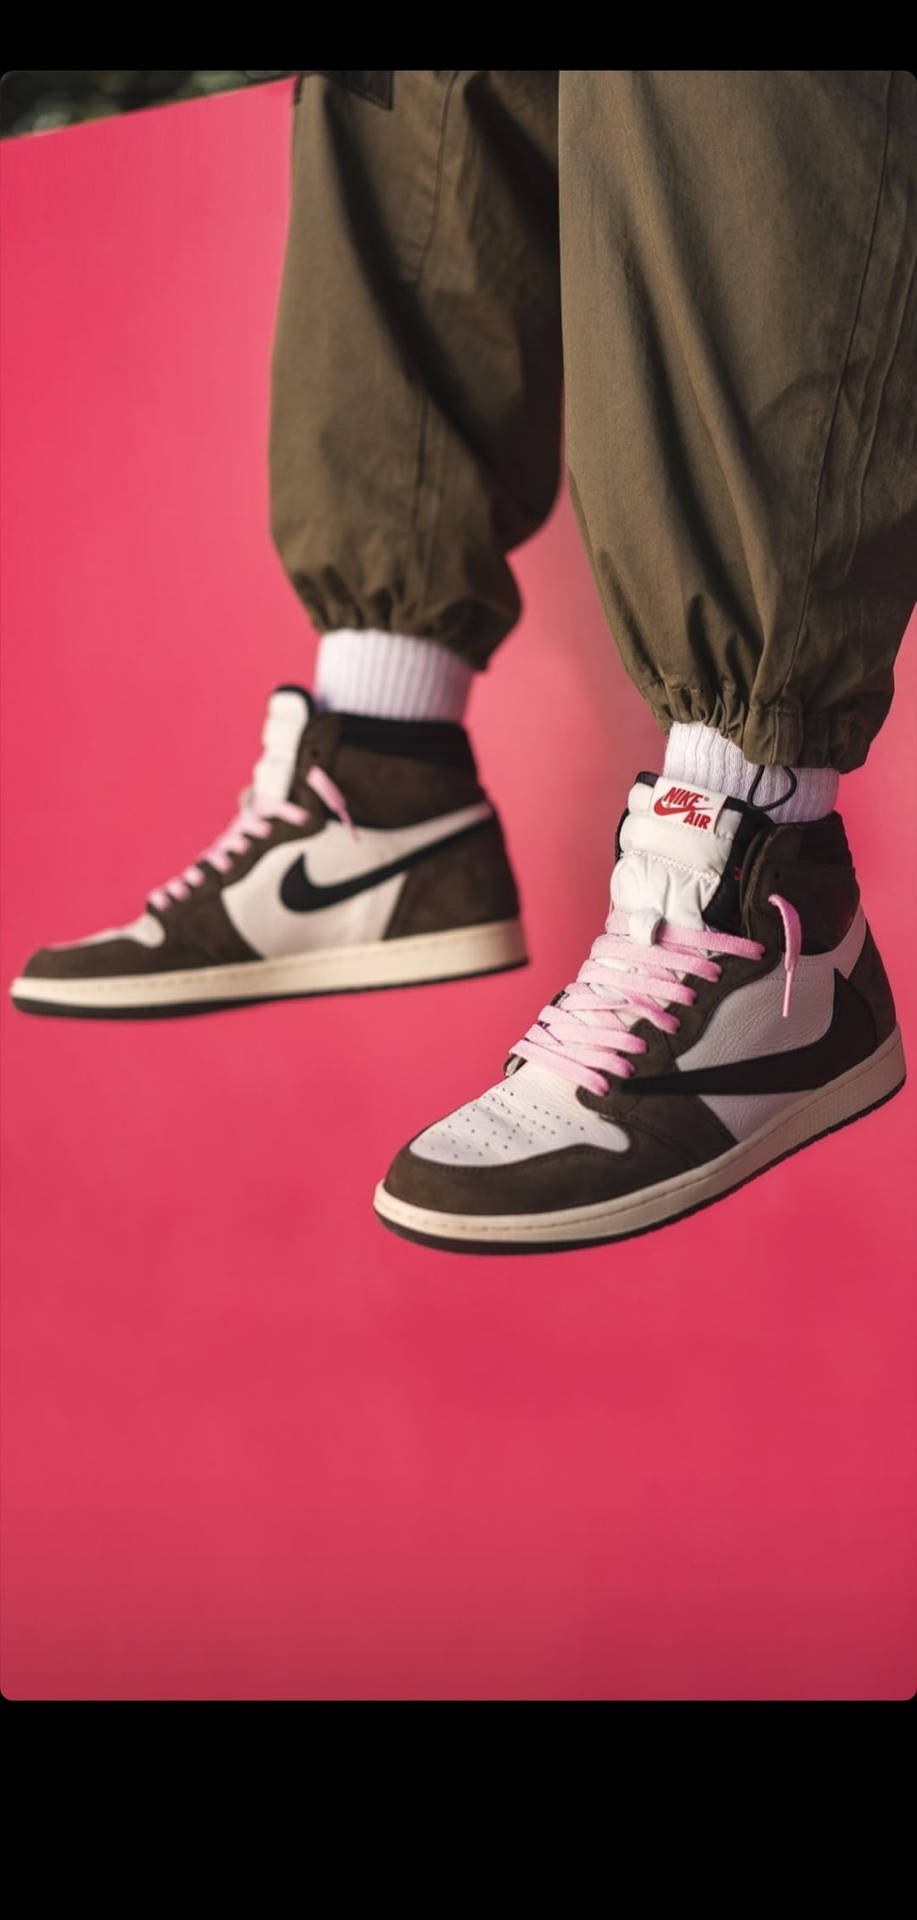 Stylish Photograph Of Nike Jordan 1 Background